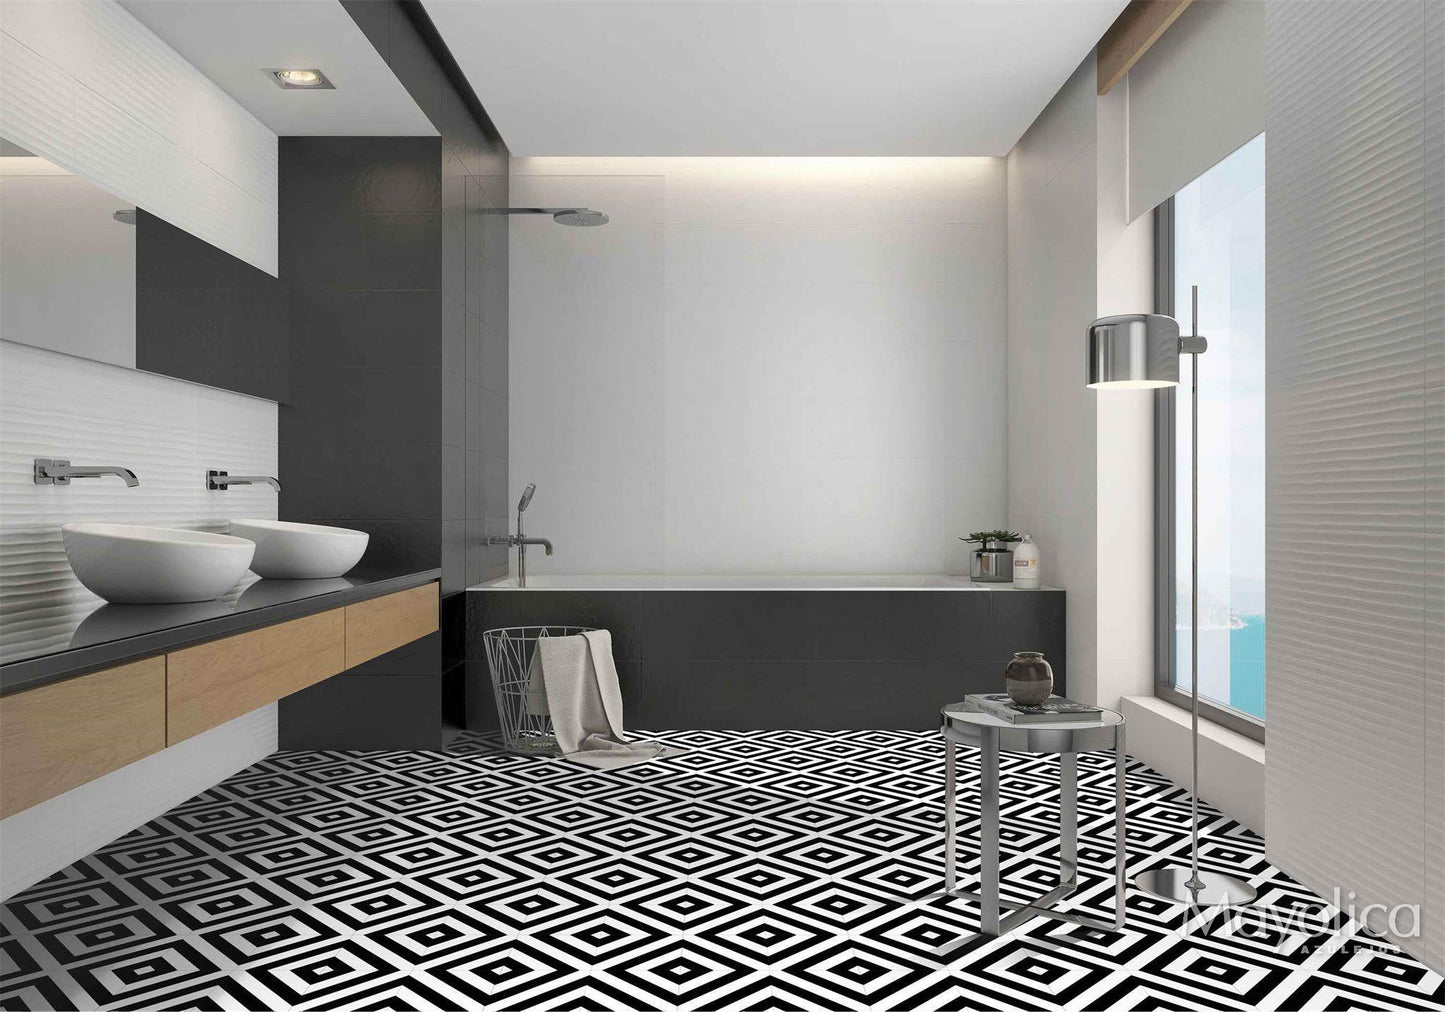 8x8 Art Decor Lines porcelain tile - Industry Tile